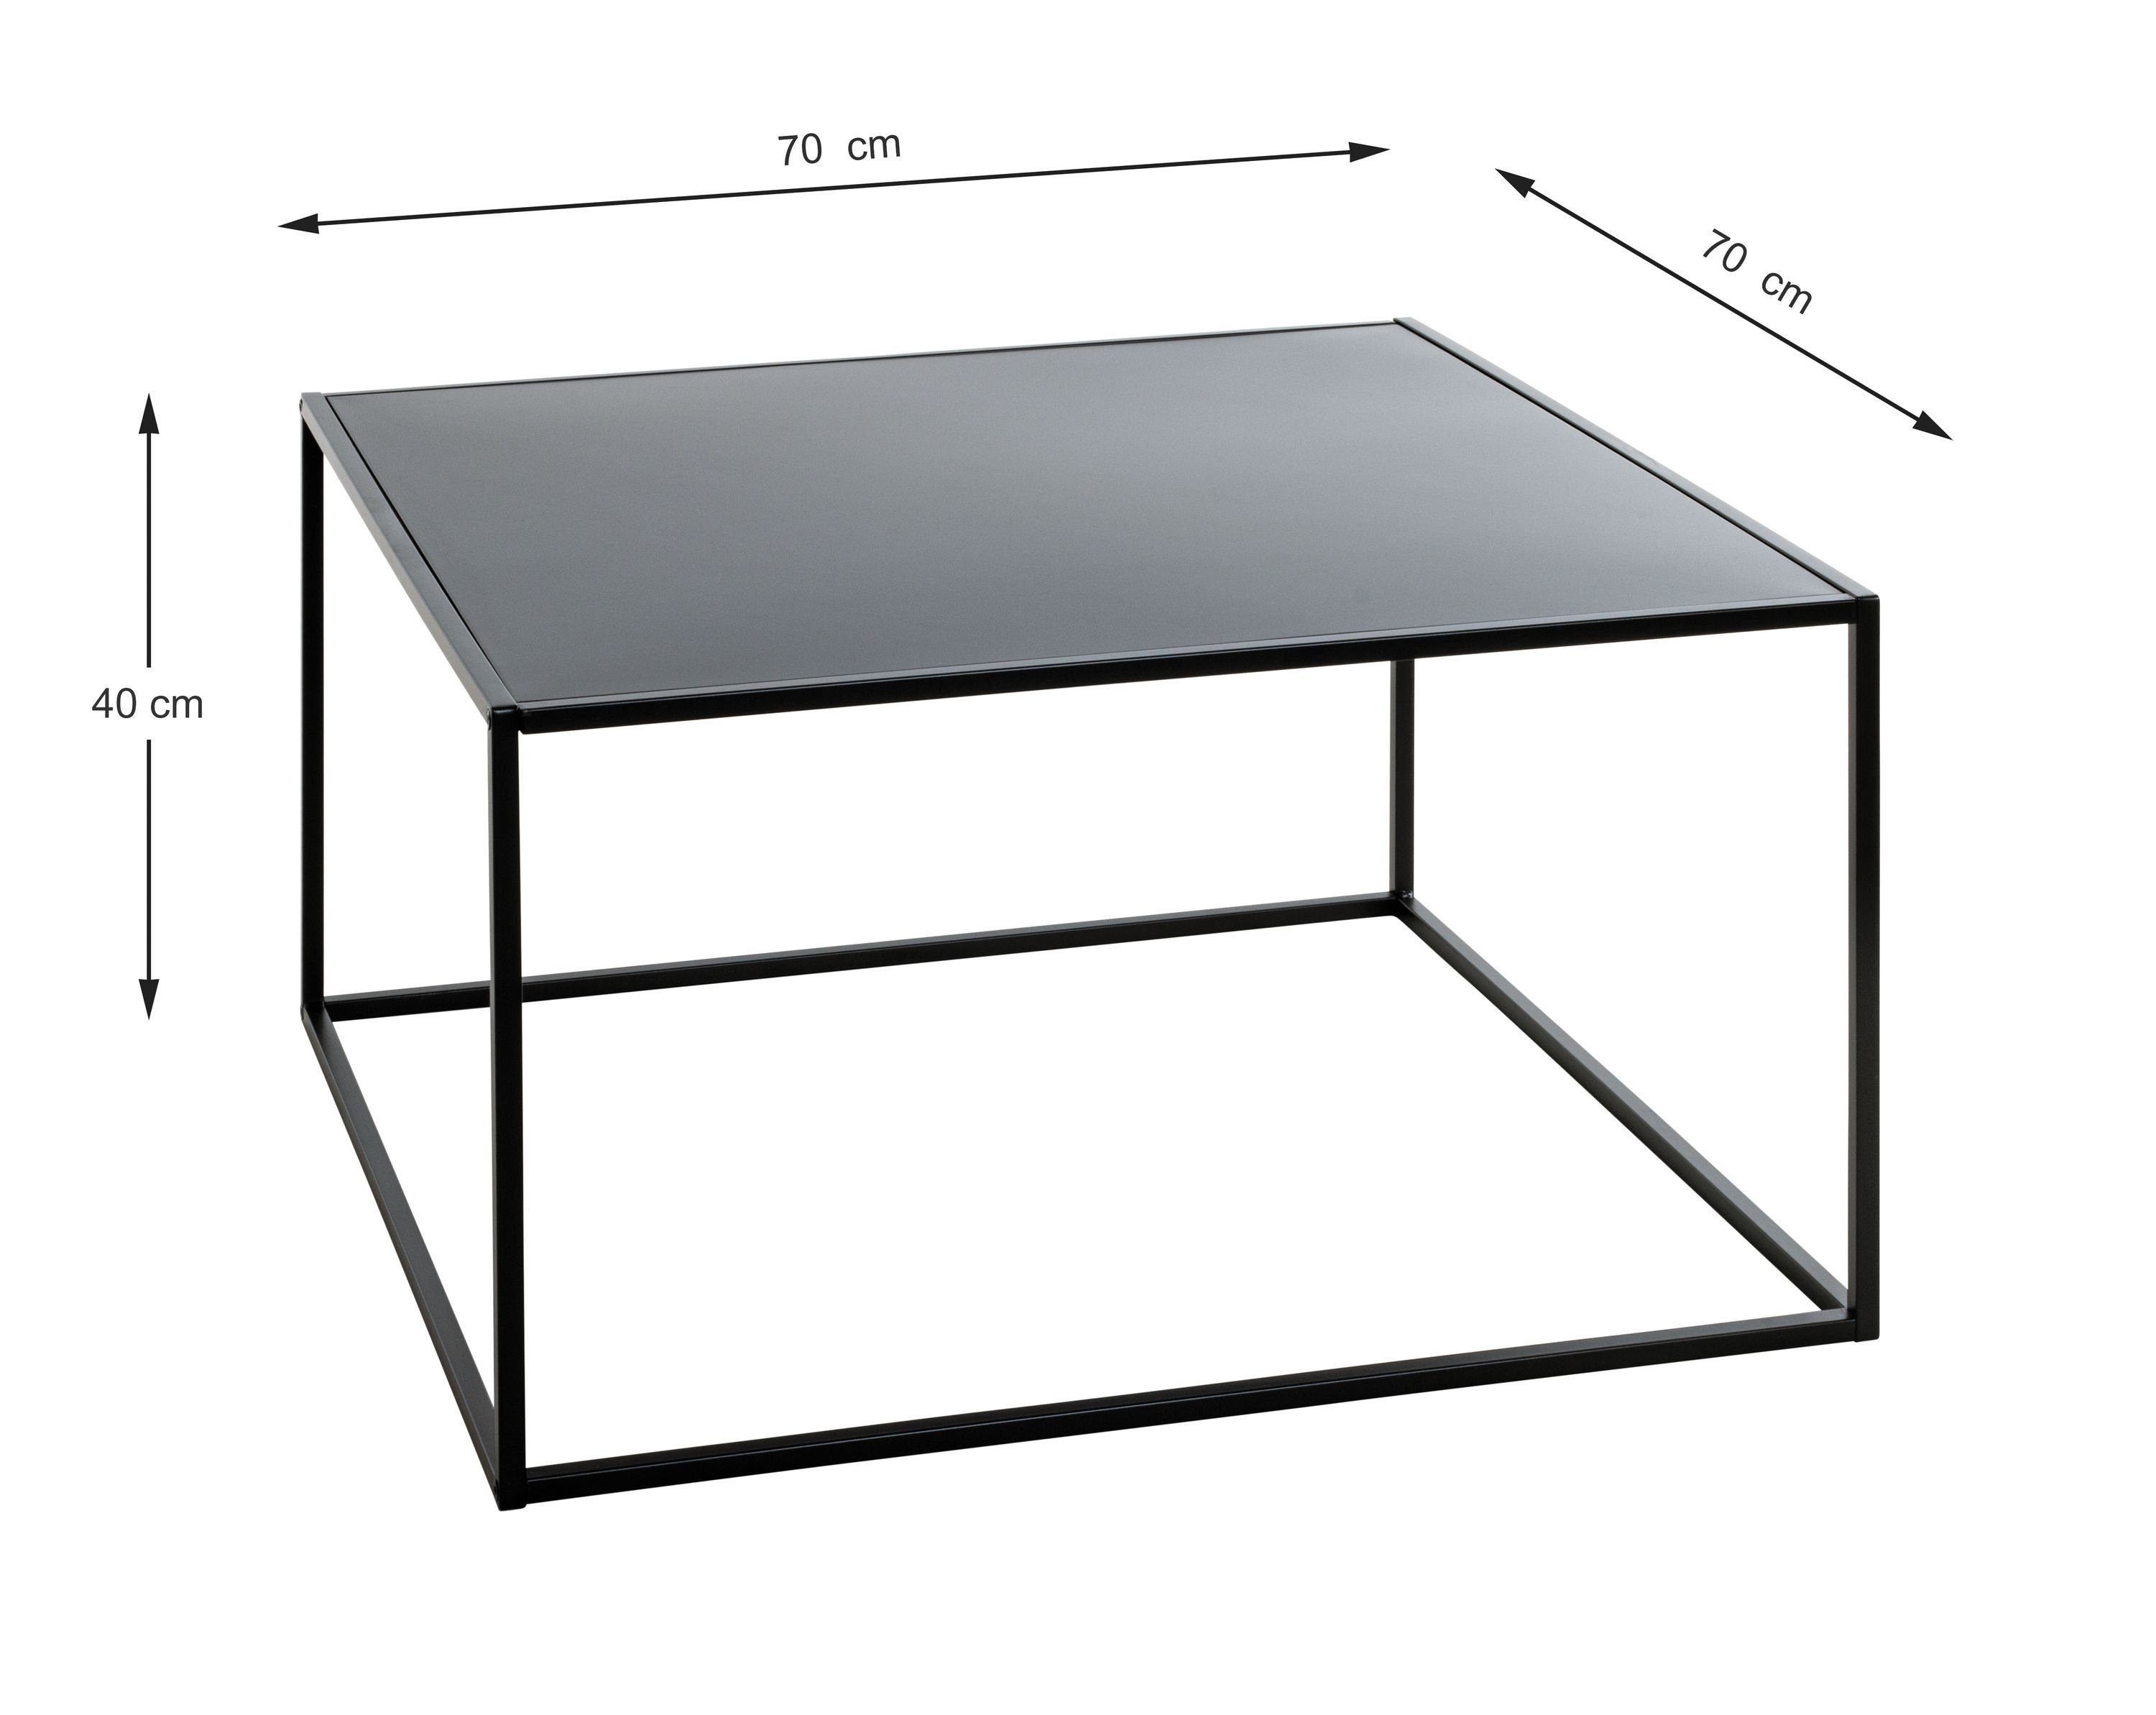 schwarz Möbel HAKU Beistelltisch Beistelltisch BHT Beistelltisch, cm) HAKU (BHT cm 70x40x70 70x40x70